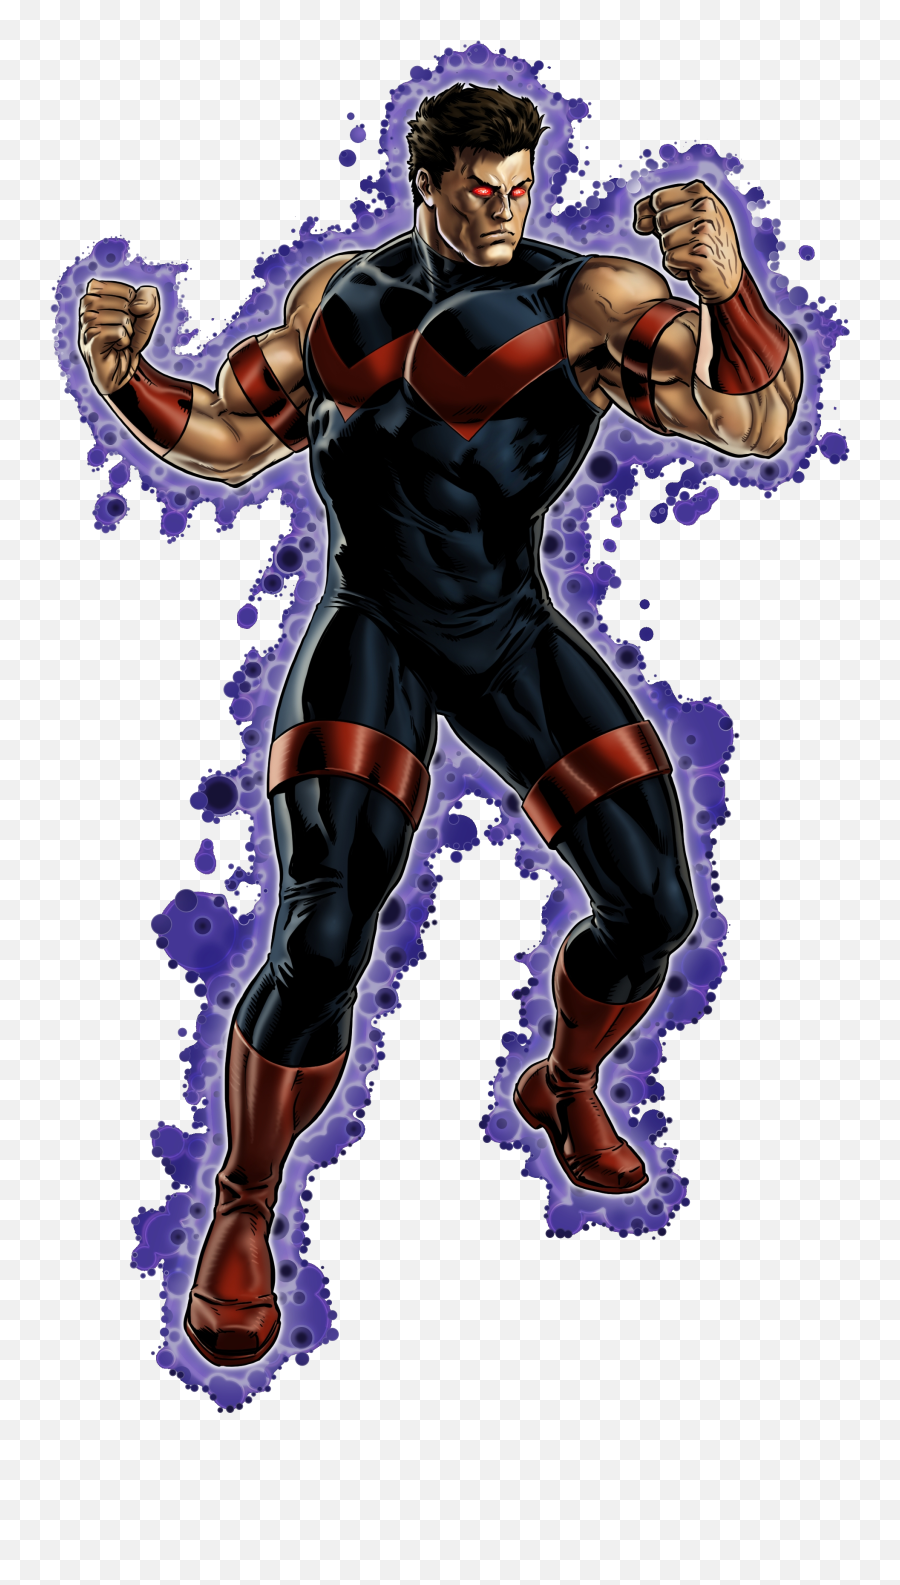 Marvel Avenger Alliance Character Transparent Png - Free Emoji,Martian Manhunter Png